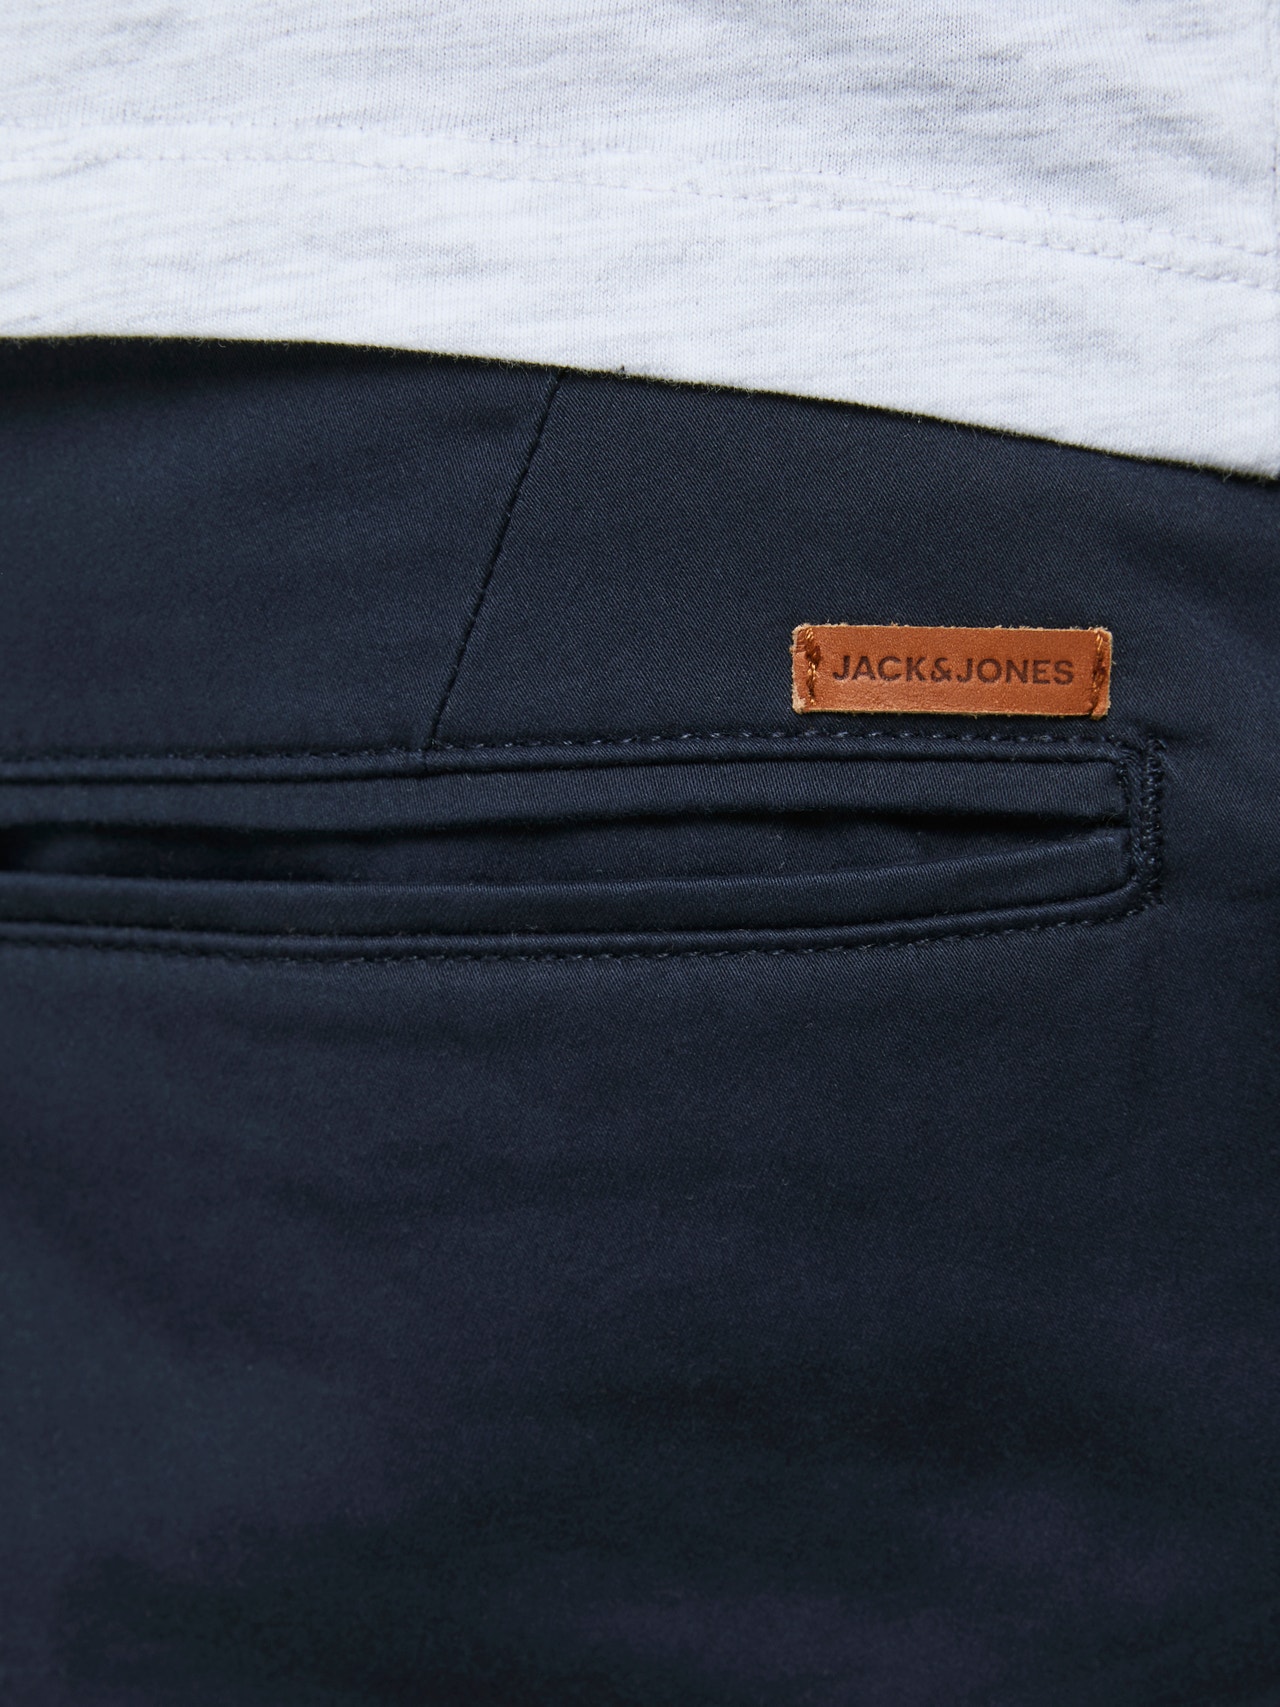 Jack & Jones Plus Size Regular Fit Calções Chino -Navy Blazer - 12169212